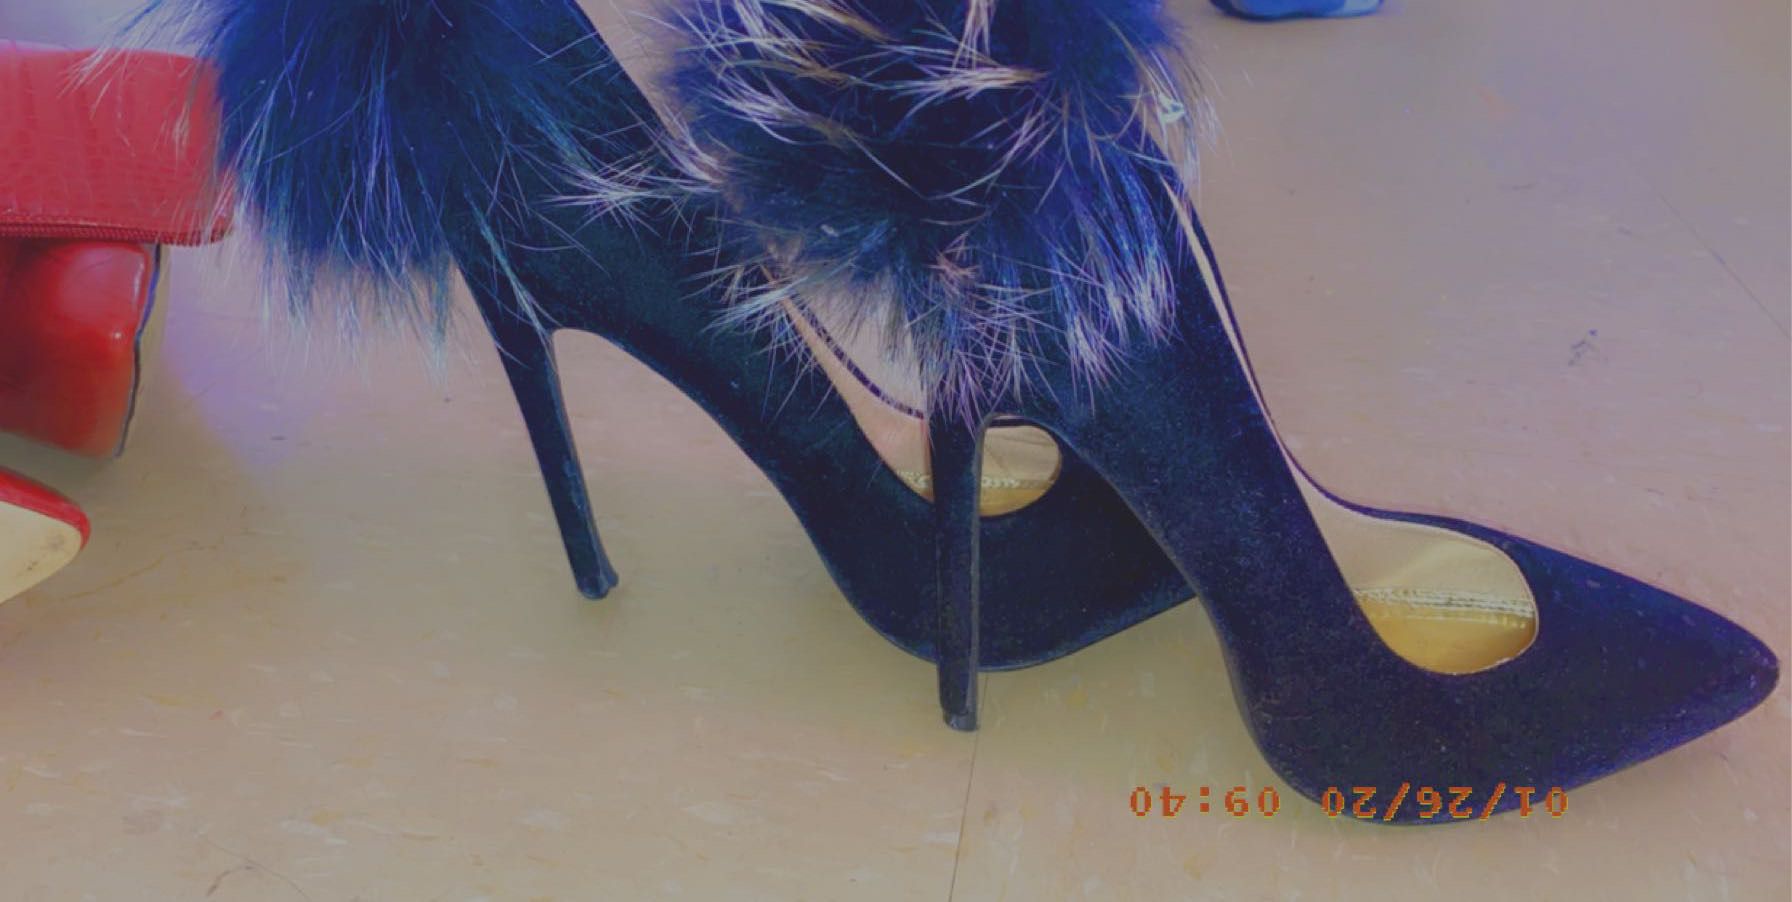 Swade heels